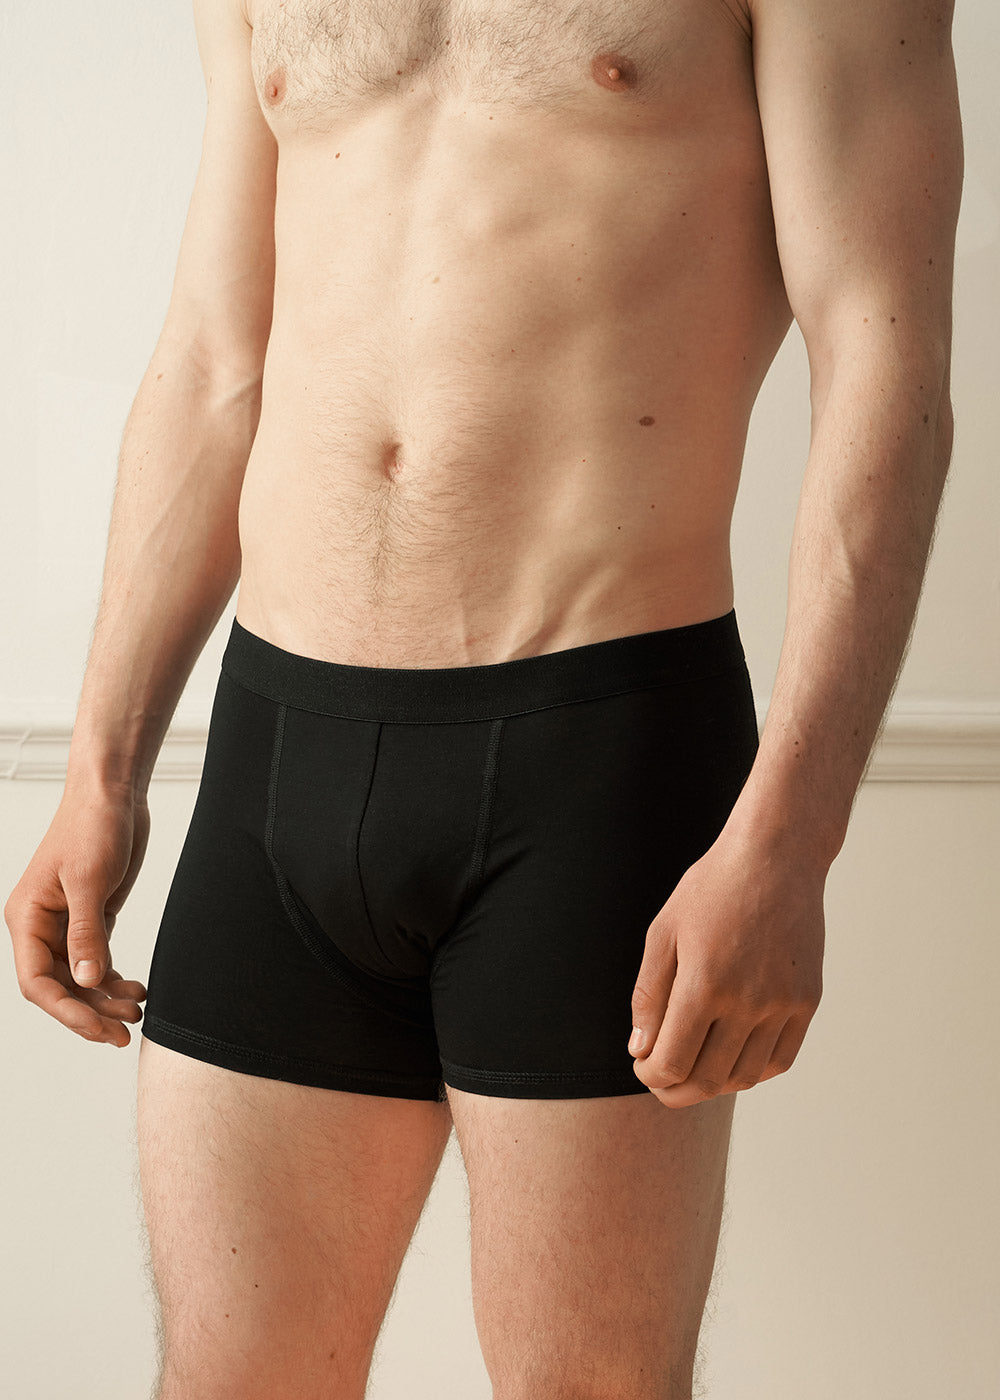 Black Boxer Briefs, Underwear For Men